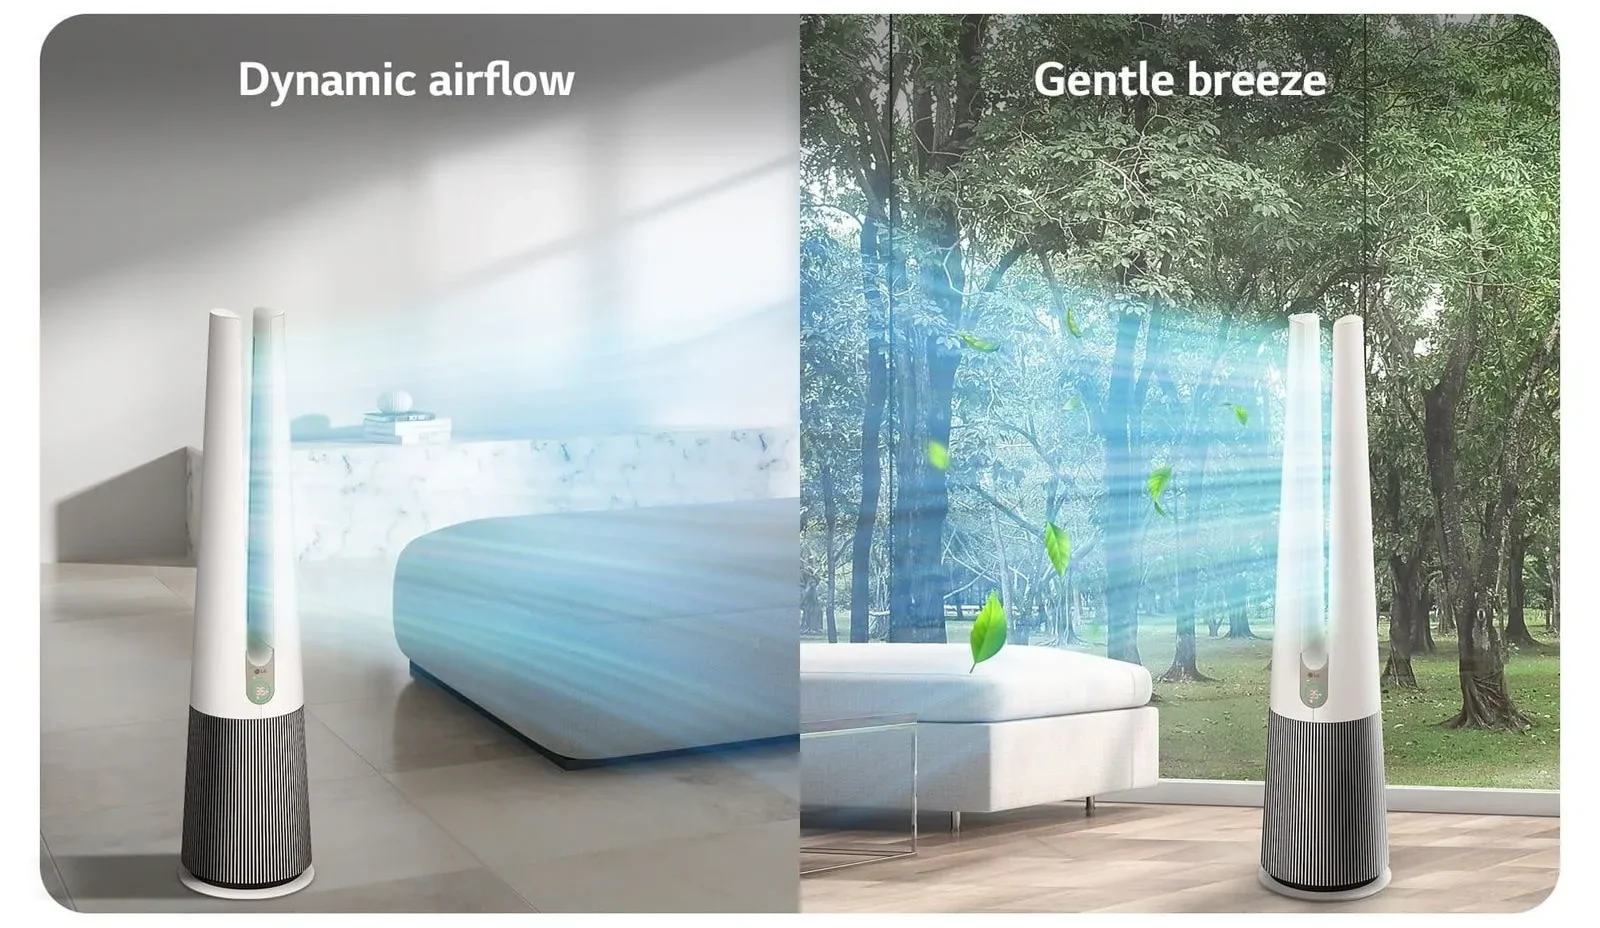 LG PuriCare AeroTower Hit: Sự lựa chọn hoàn hảo cho không gian sống xanh và sang trọng